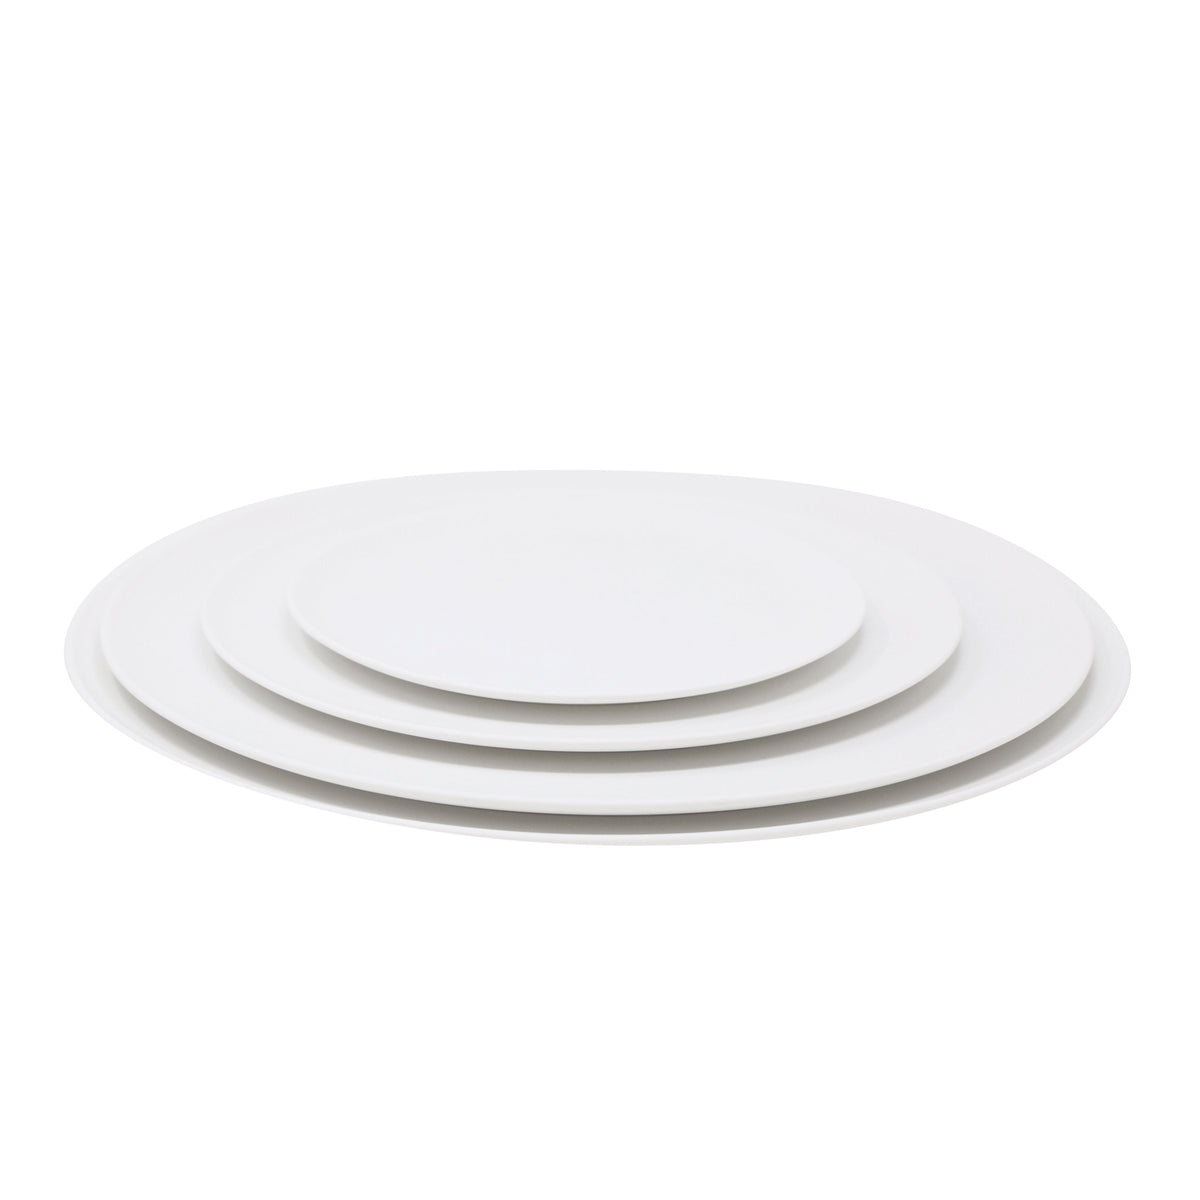 SLIM high-gloss white - Dinner plate